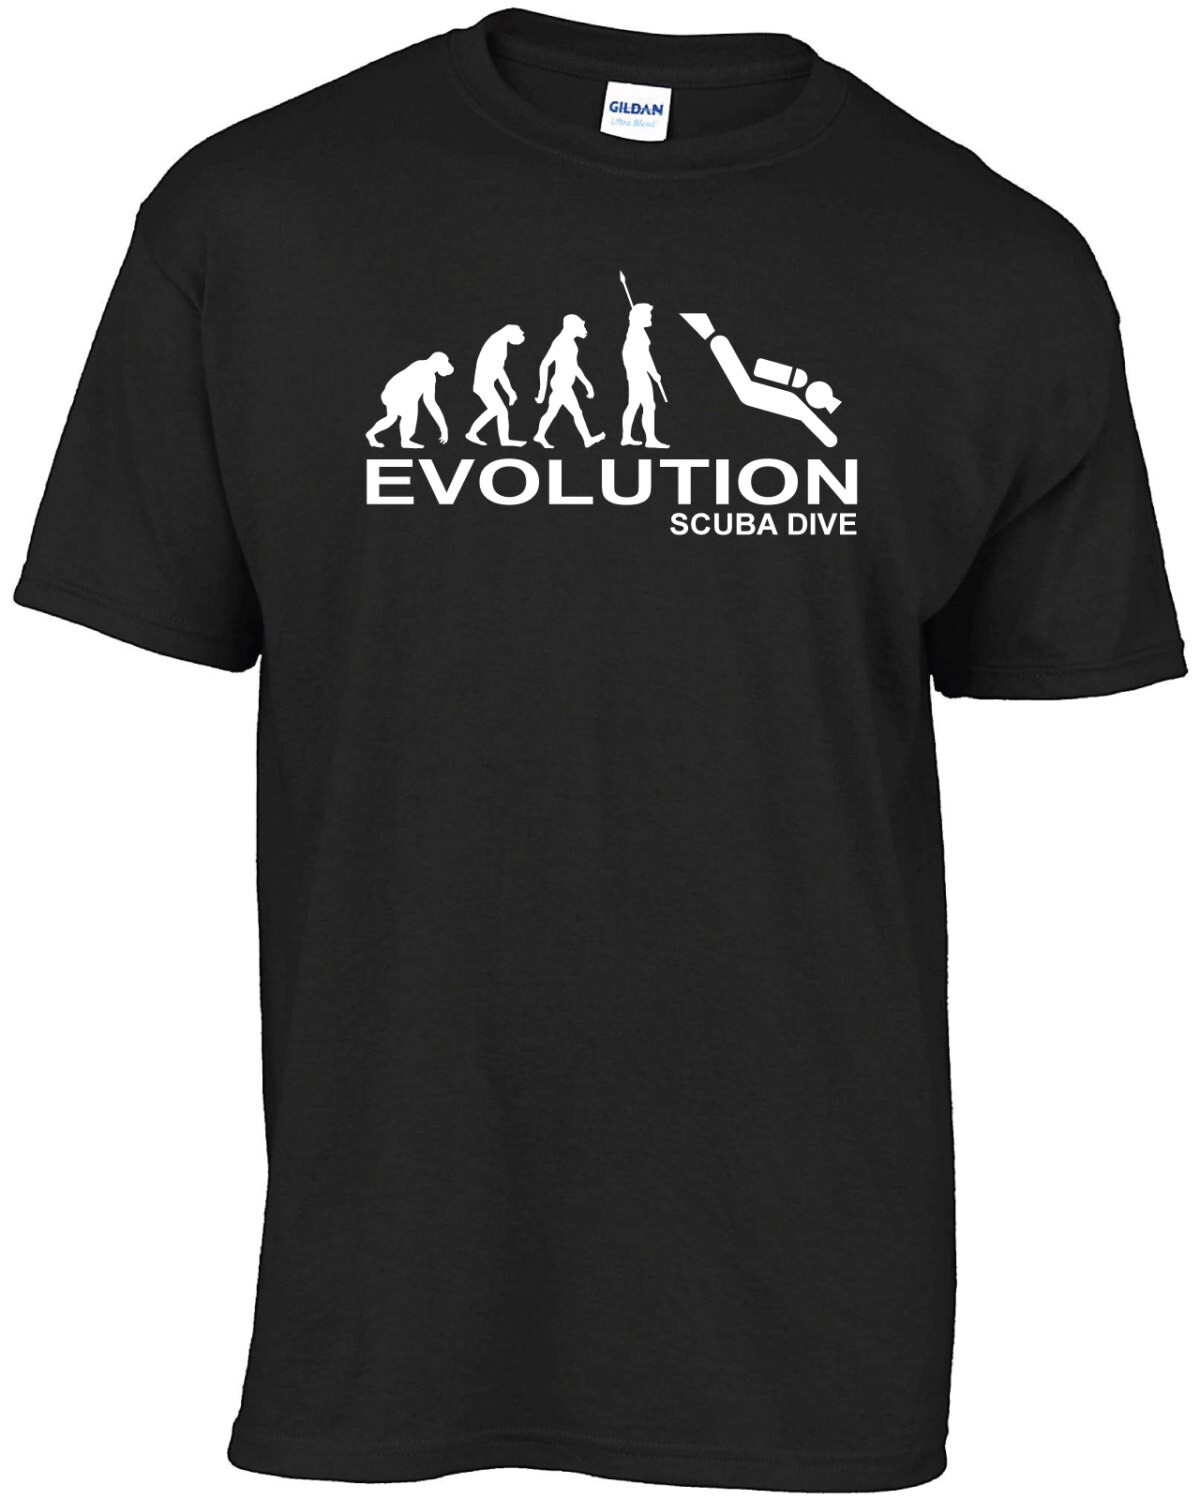 Evolution Scuba Dive T-shirt - Etsy UK